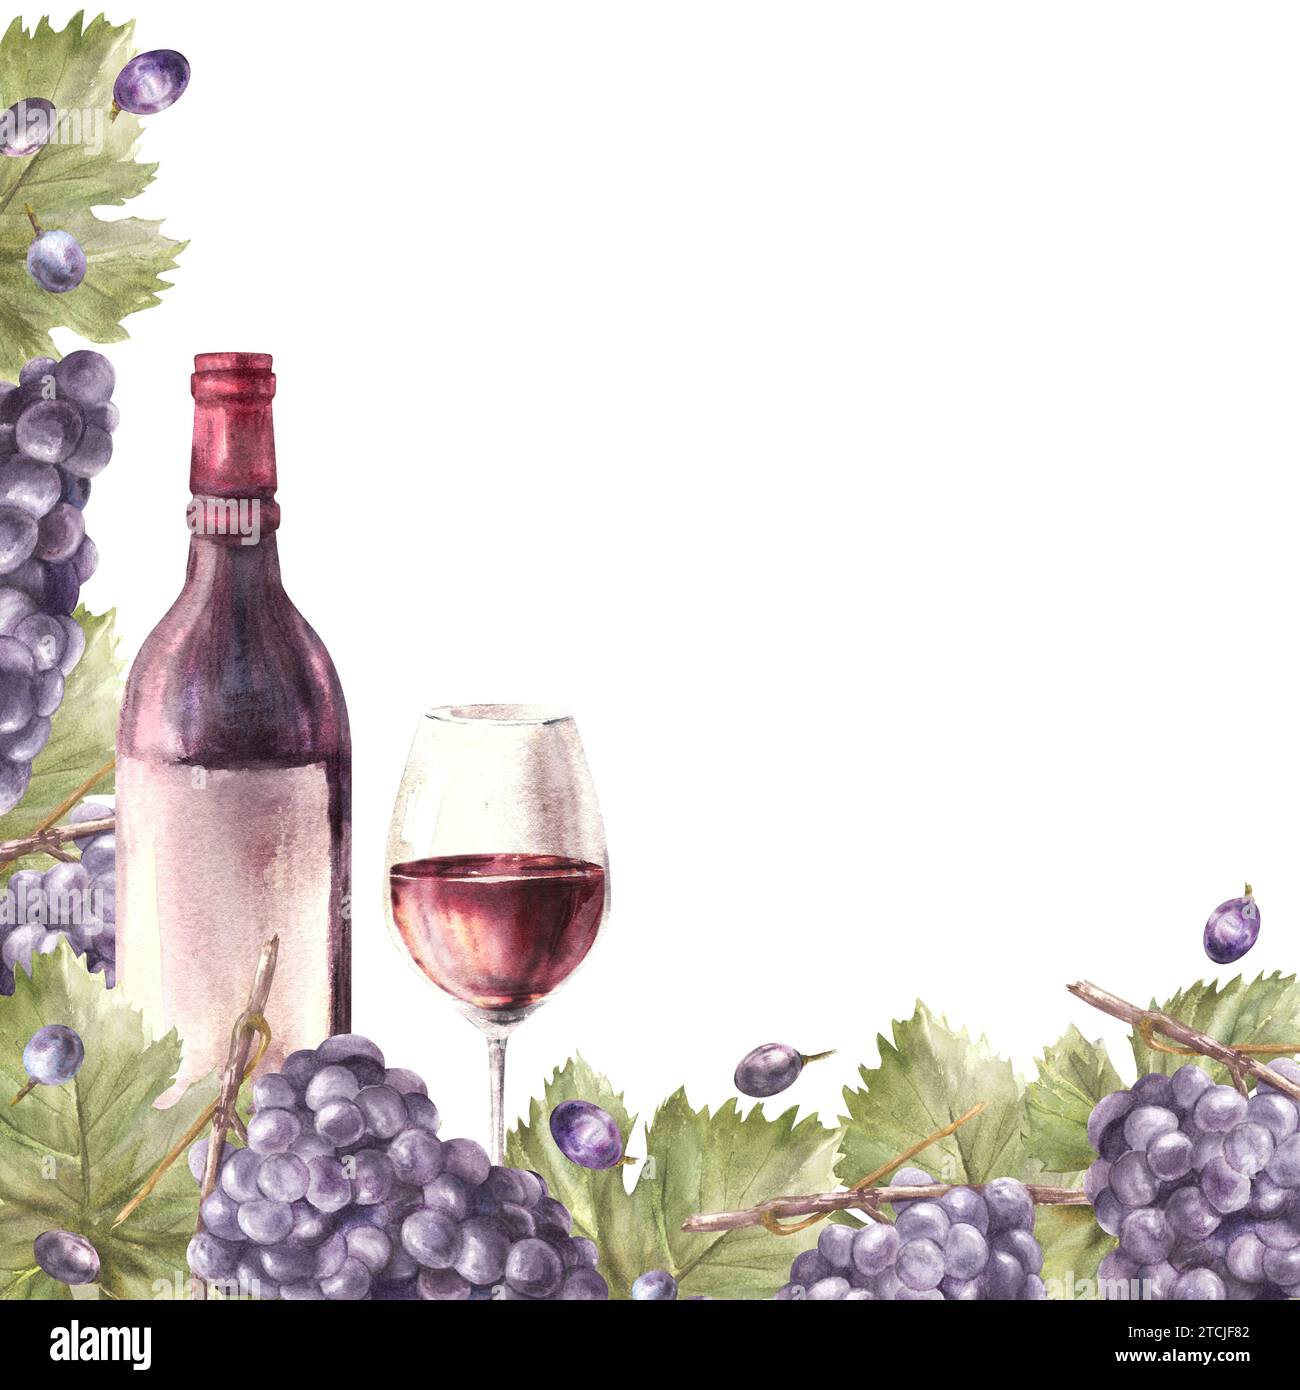 Bouquet de cadre carré aquarelle de raisins bleus, feuilles et baies avec bouteille et verre de vin rouge. Modèle d'illustration peint à la main pour l'étiquette de vigne Banque D'Images